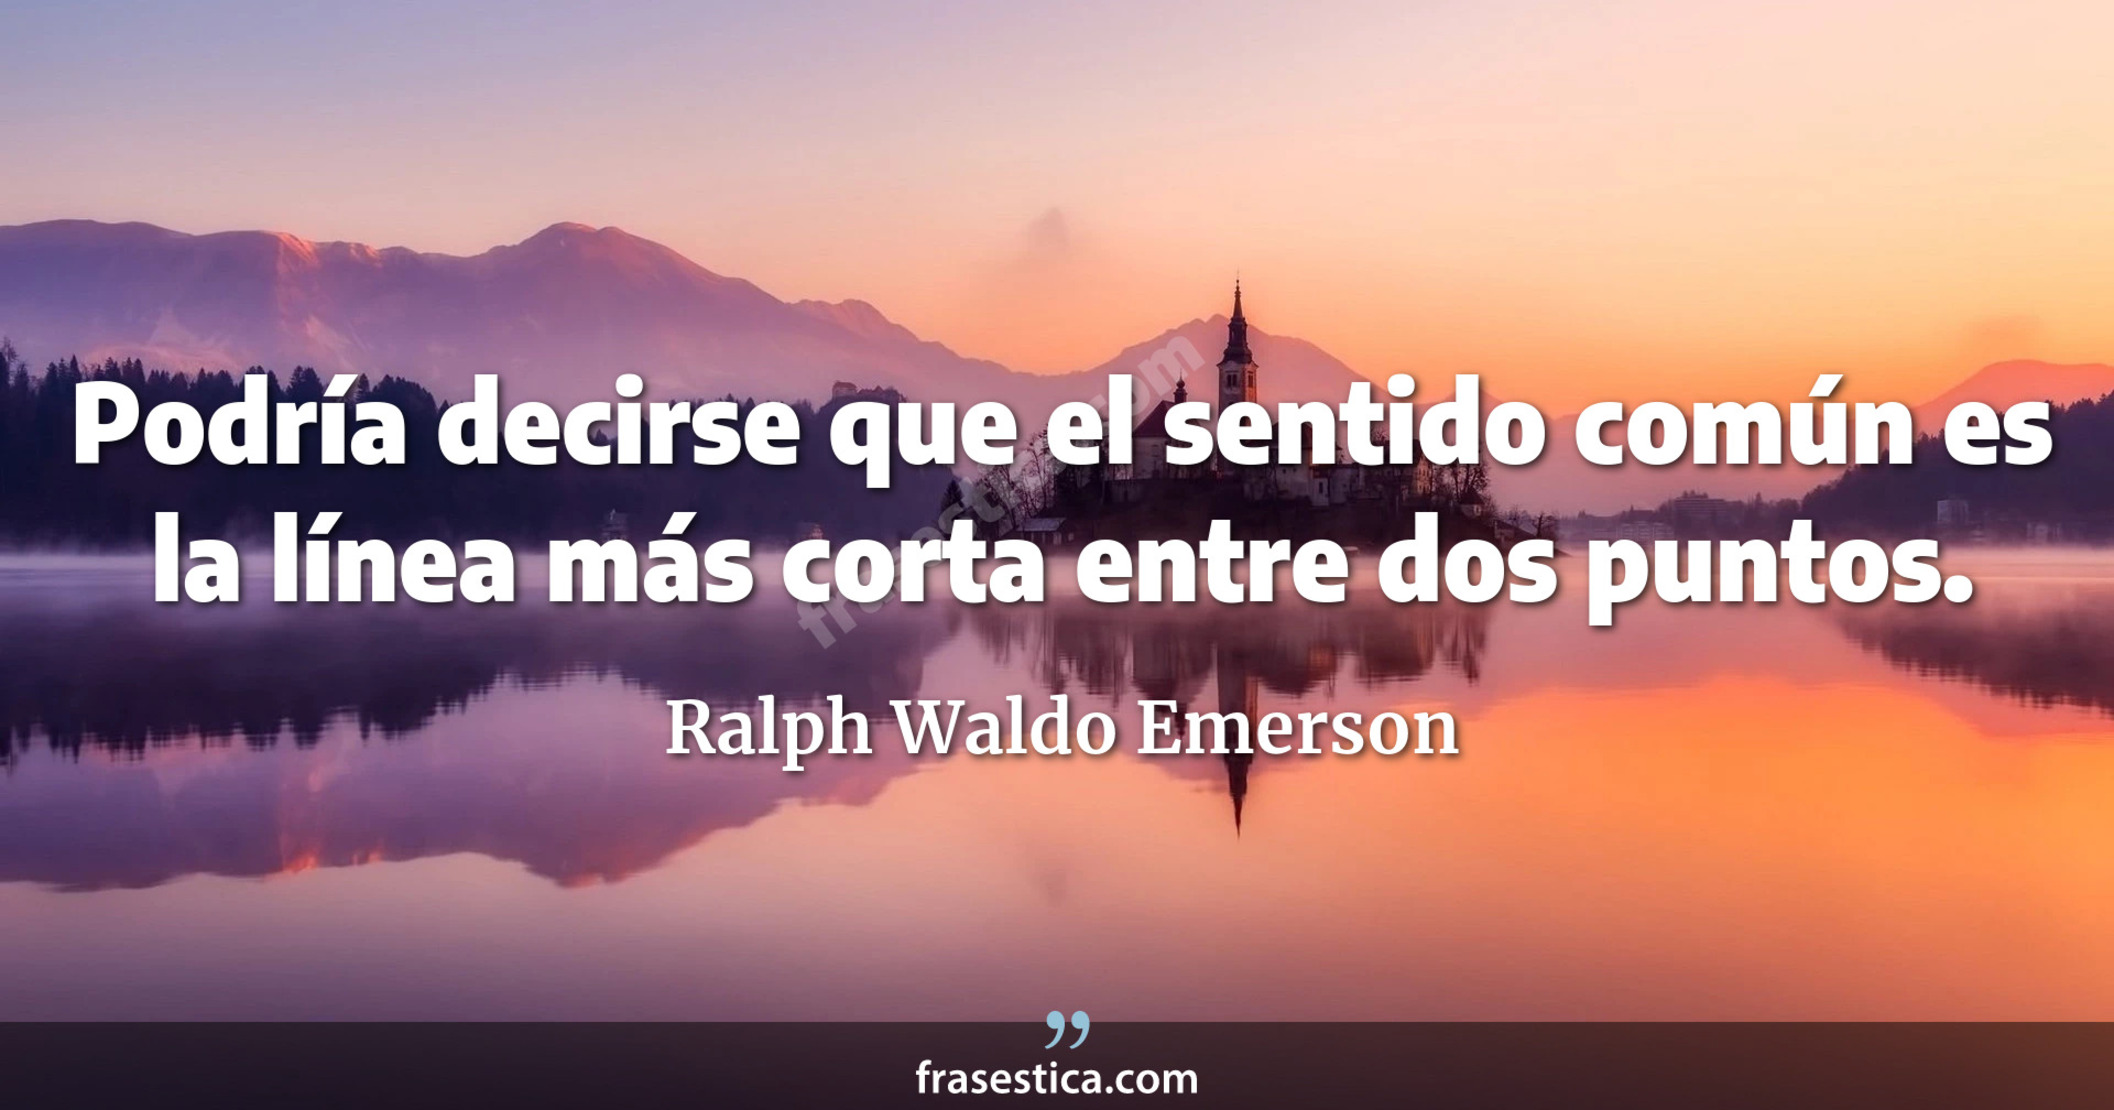 Podría decirse que el sentido común es la línea más corta entre dos puntos. - Ralph Waldo Emerson